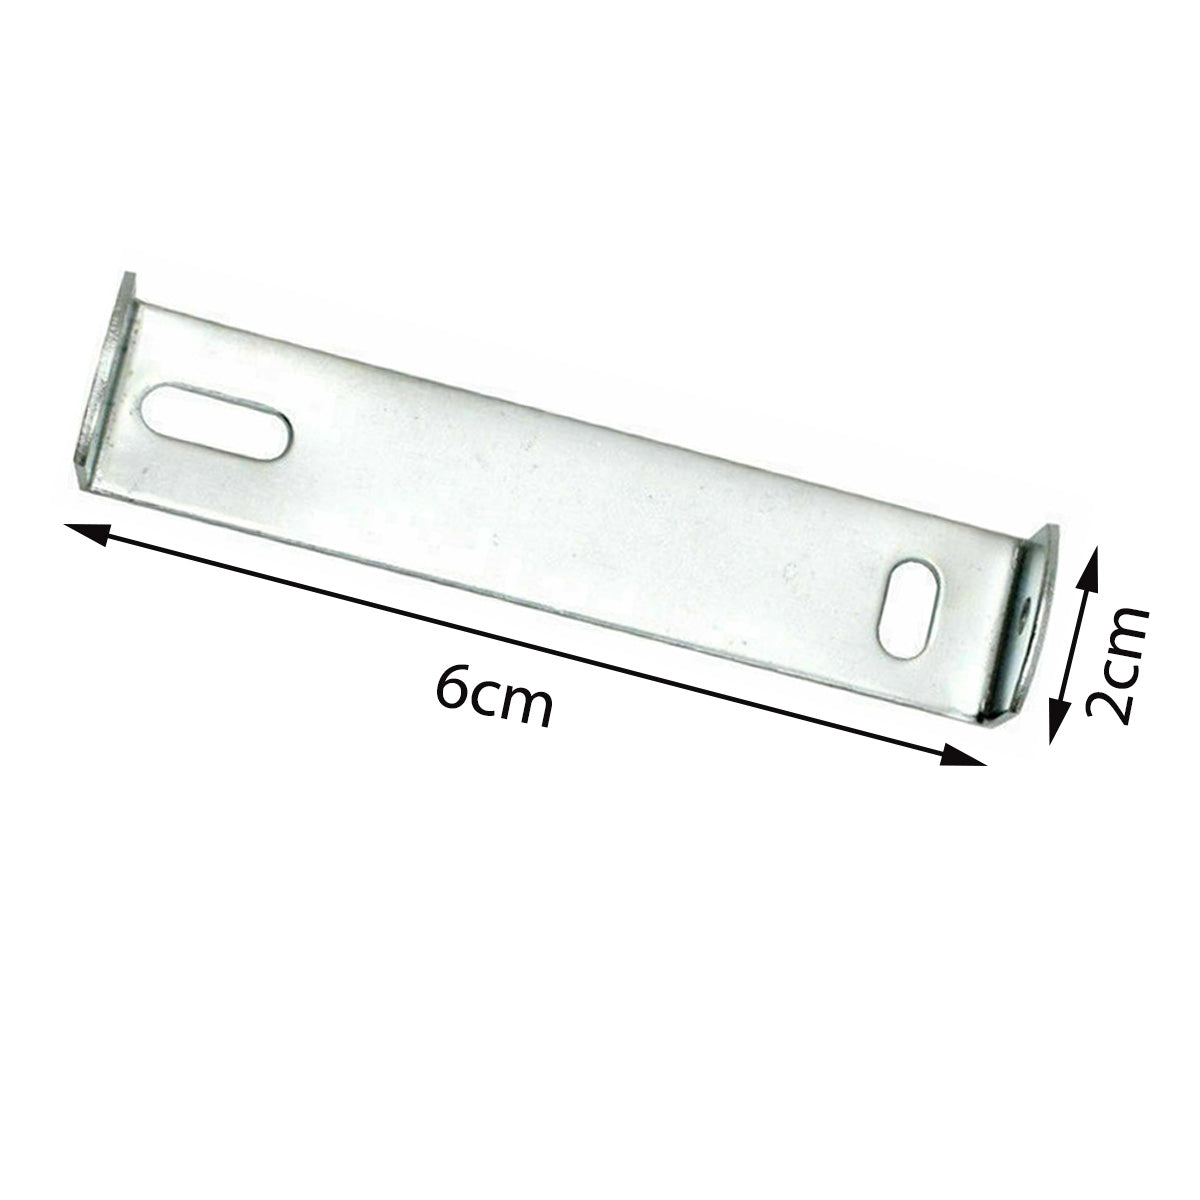 Deckenrosette Strap Halterung Strap Brace Plate mit Zubehör Beleuchtung 60mm